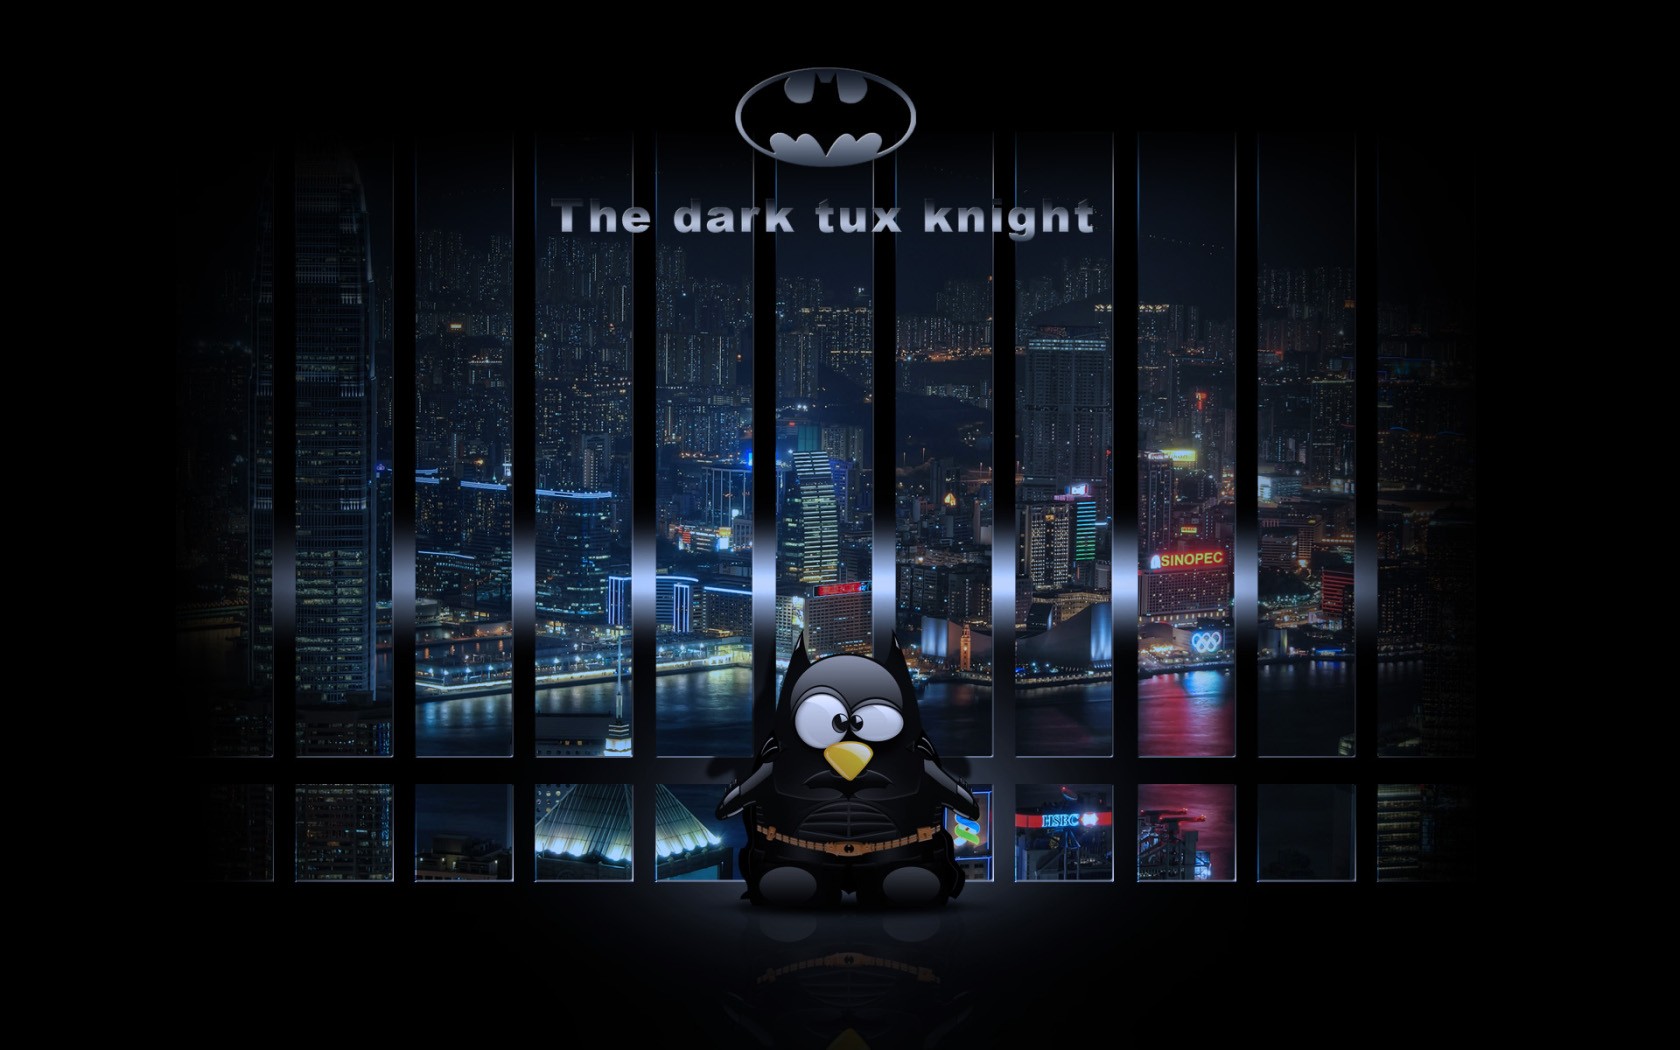 The Linux Penguin as Batman